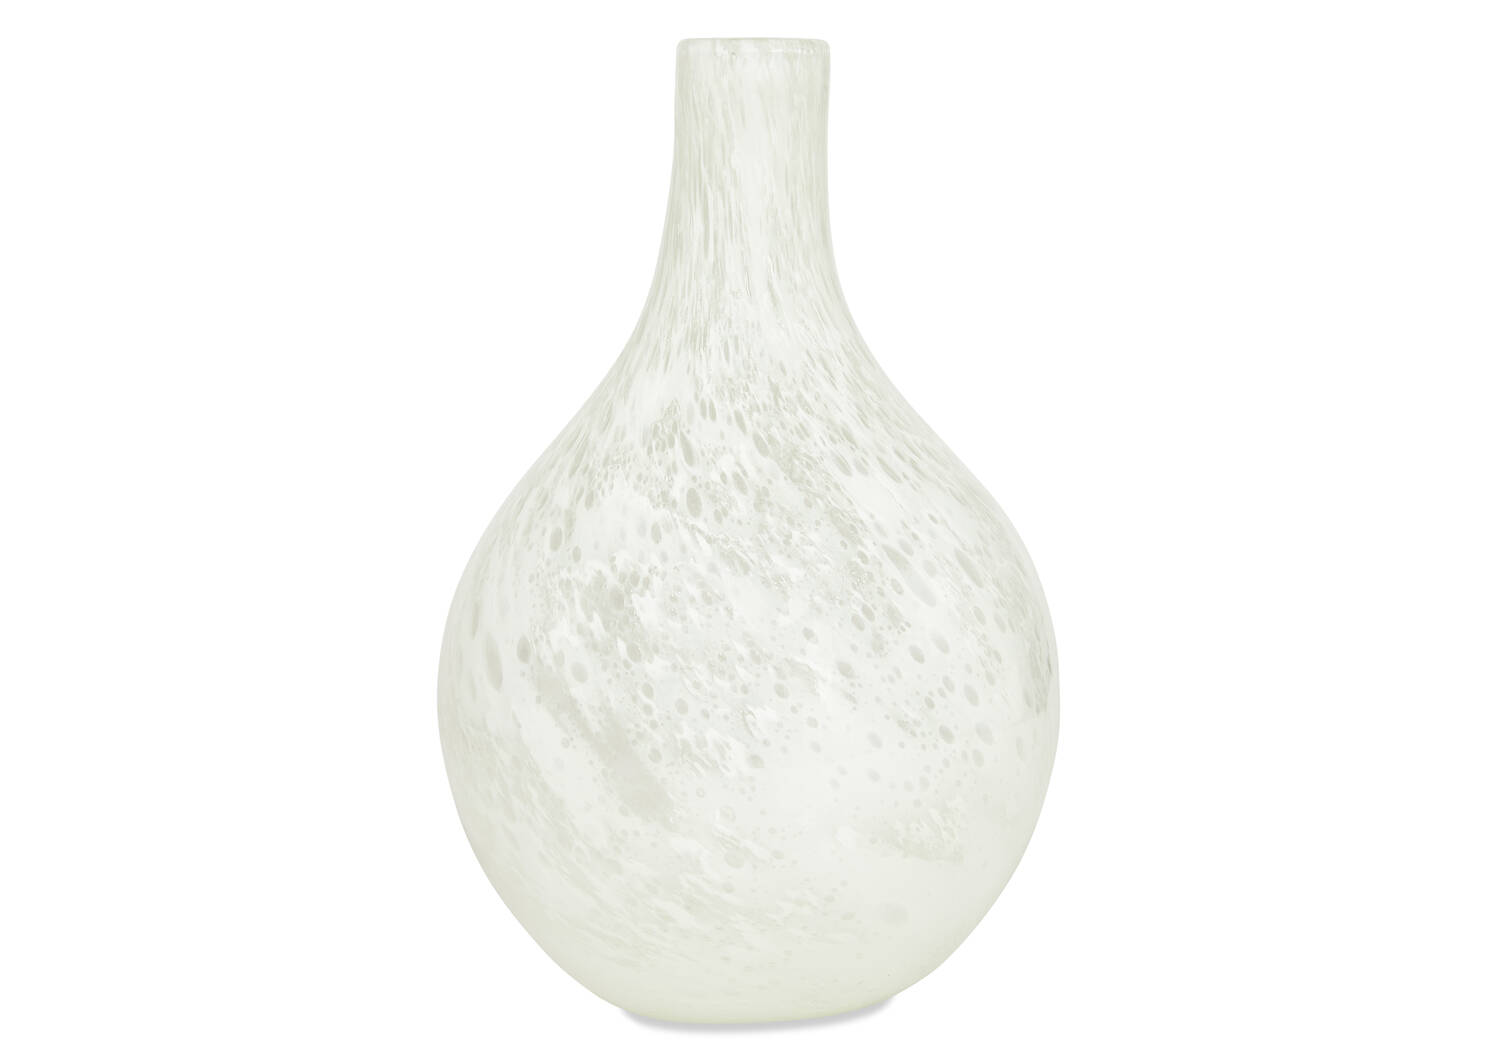 Grand vase Arabelle blanc